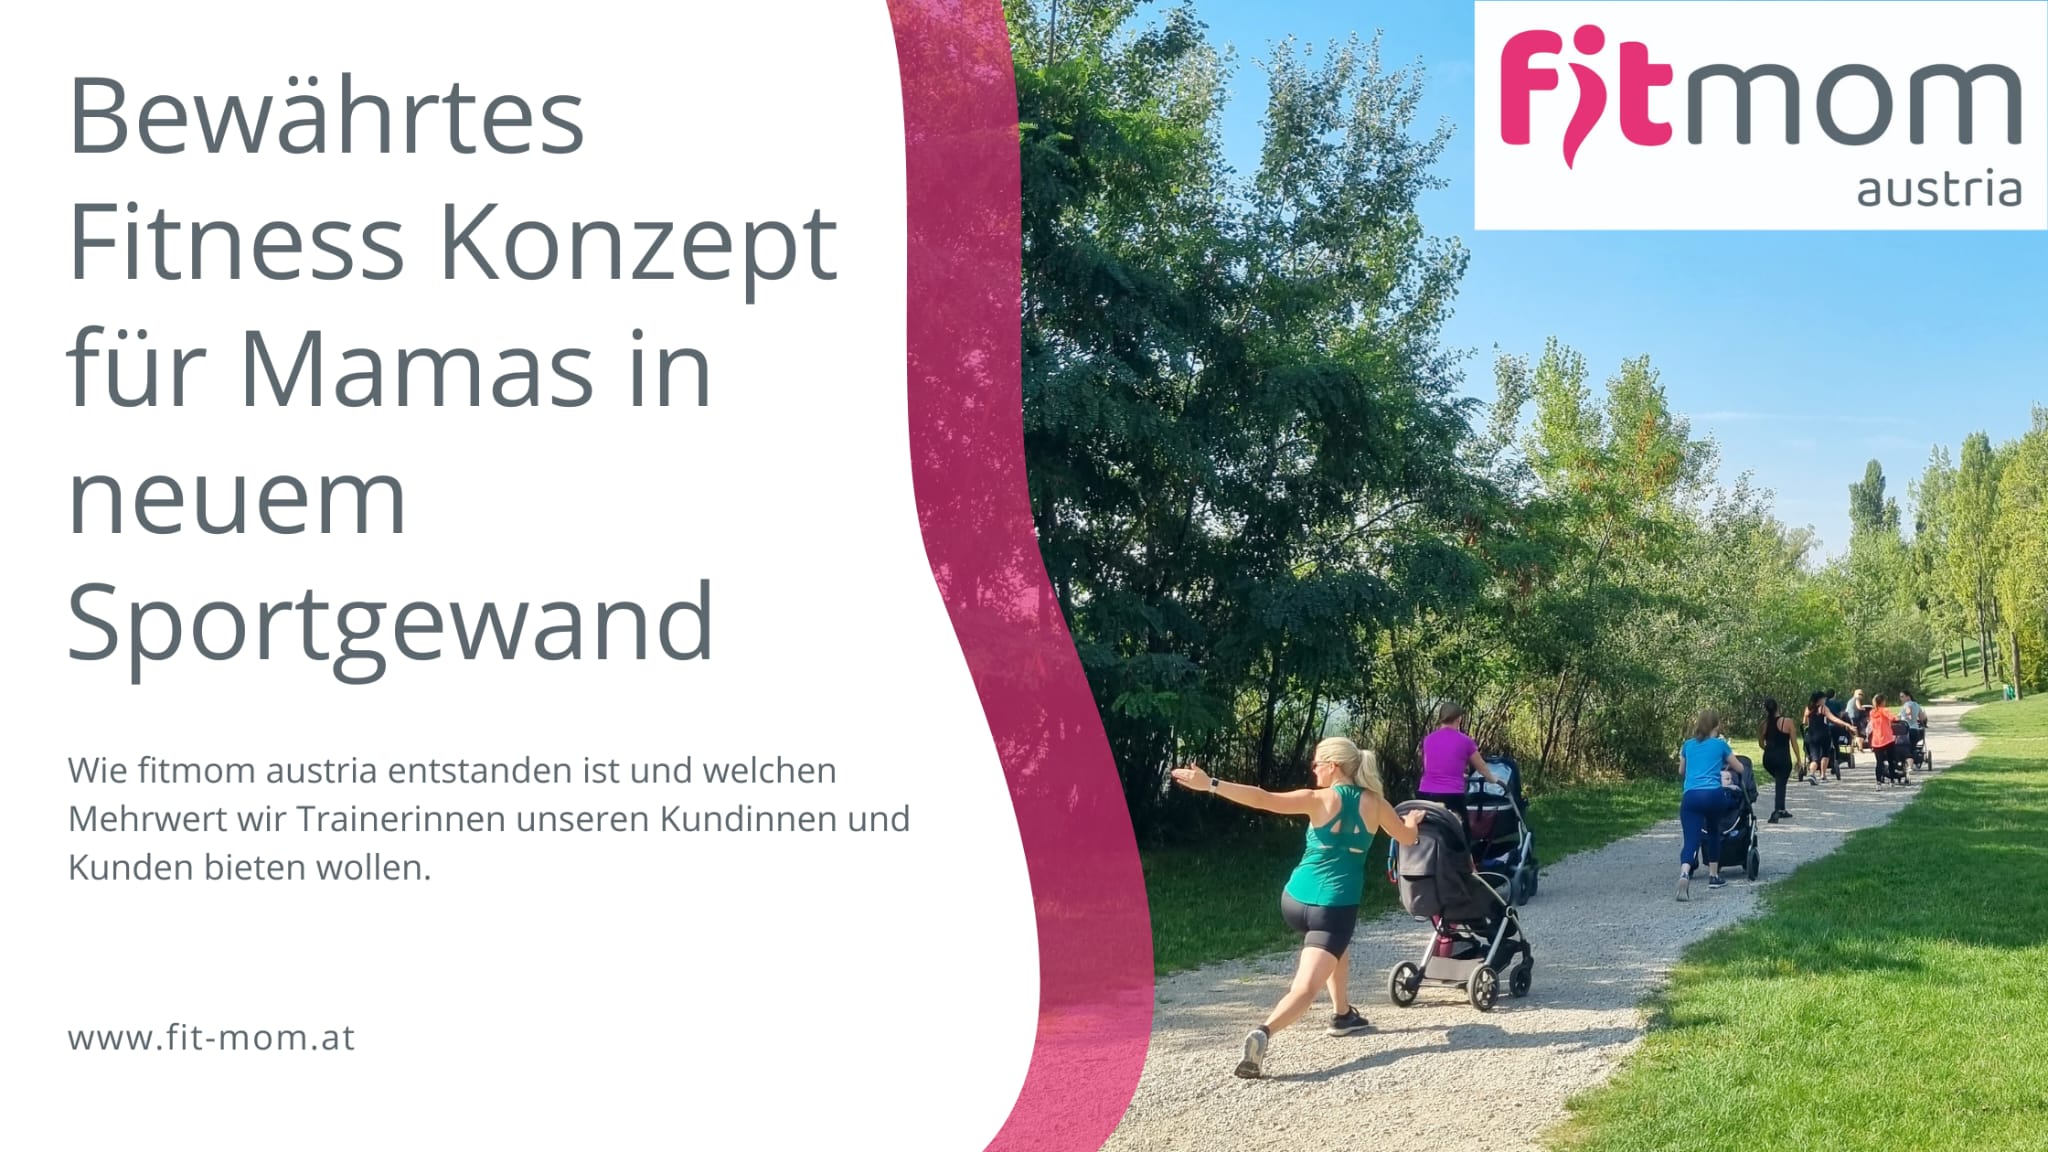 fitmom austria - bewährtes Fitness Konzept für Mamas in neuem Sportgewand (Beitragsbild)